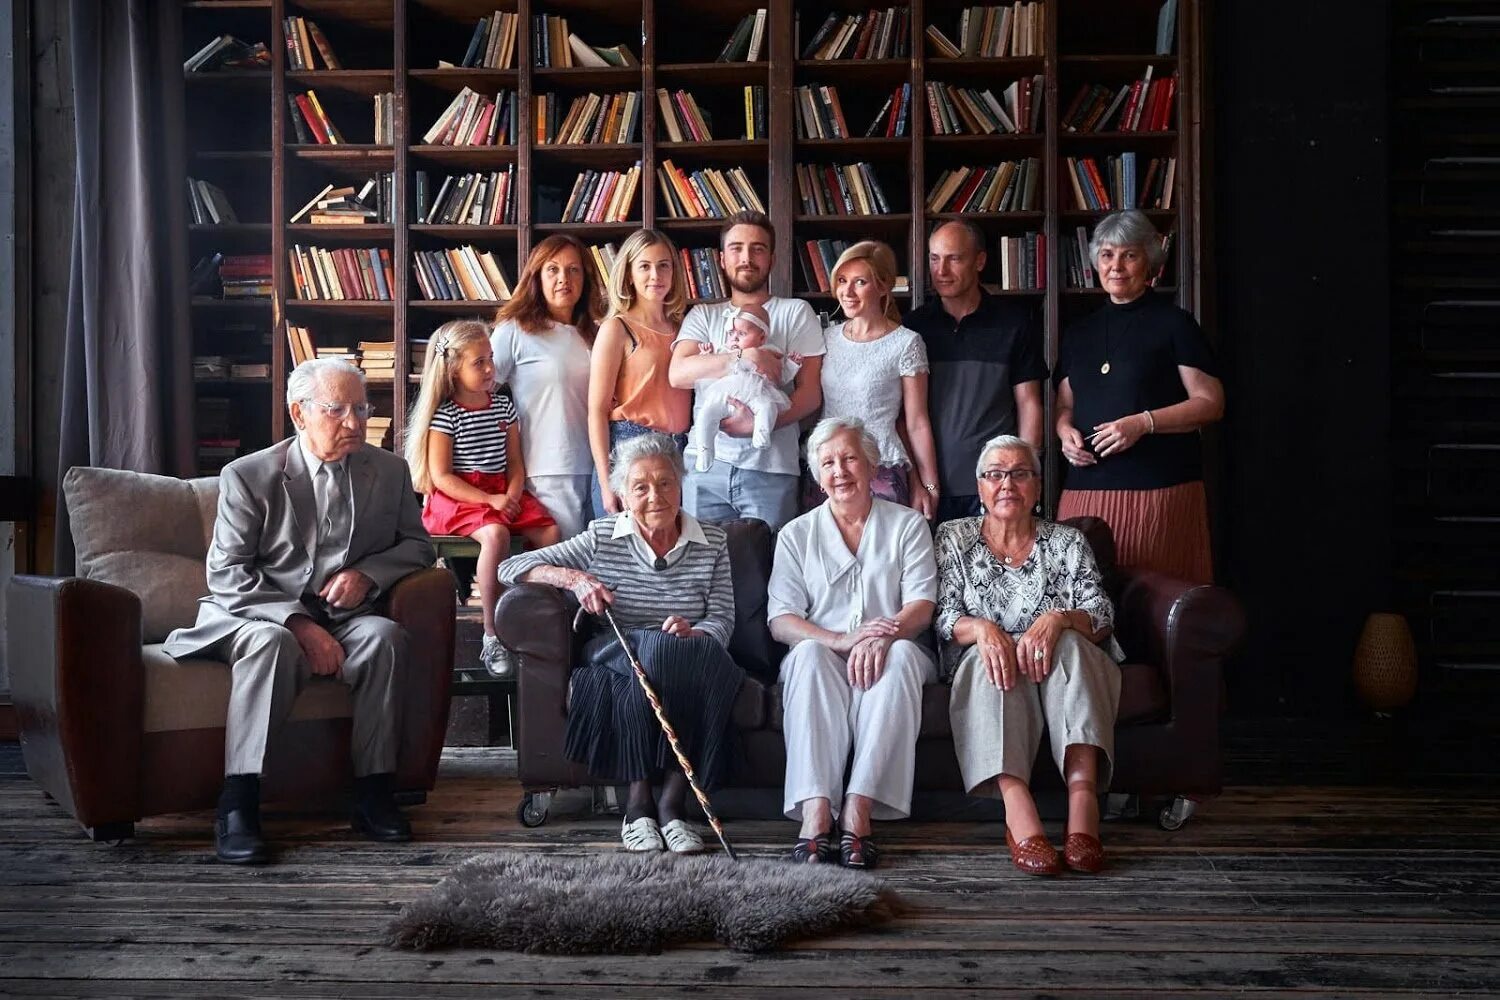 Родственник 4 поколения. Большая семья. Семья несколько поколений. Фотосессия большой семьи в студии. Разные поколения.